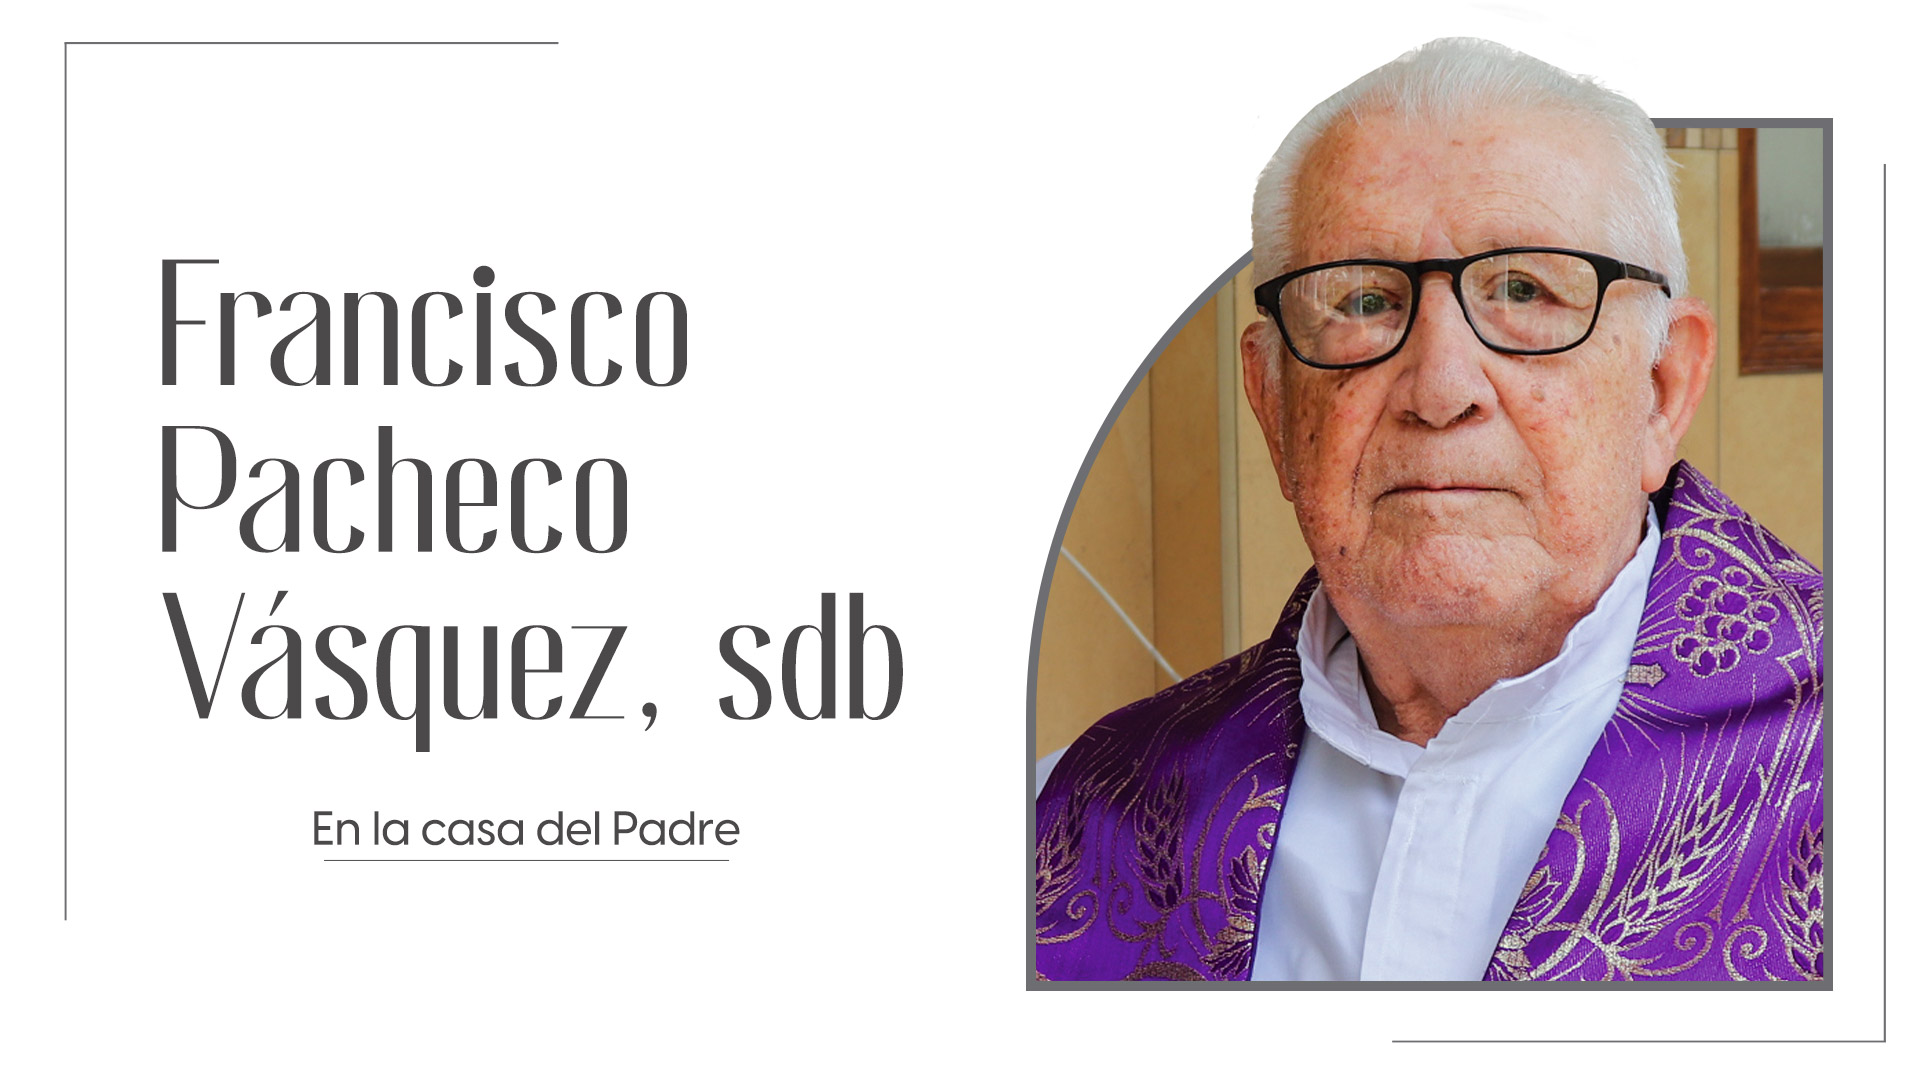 El Padre Pacheco fue un hombre de esperanza y fe en la resurrección, características cultivadas a lo largo de sus años de formación y estudio. 